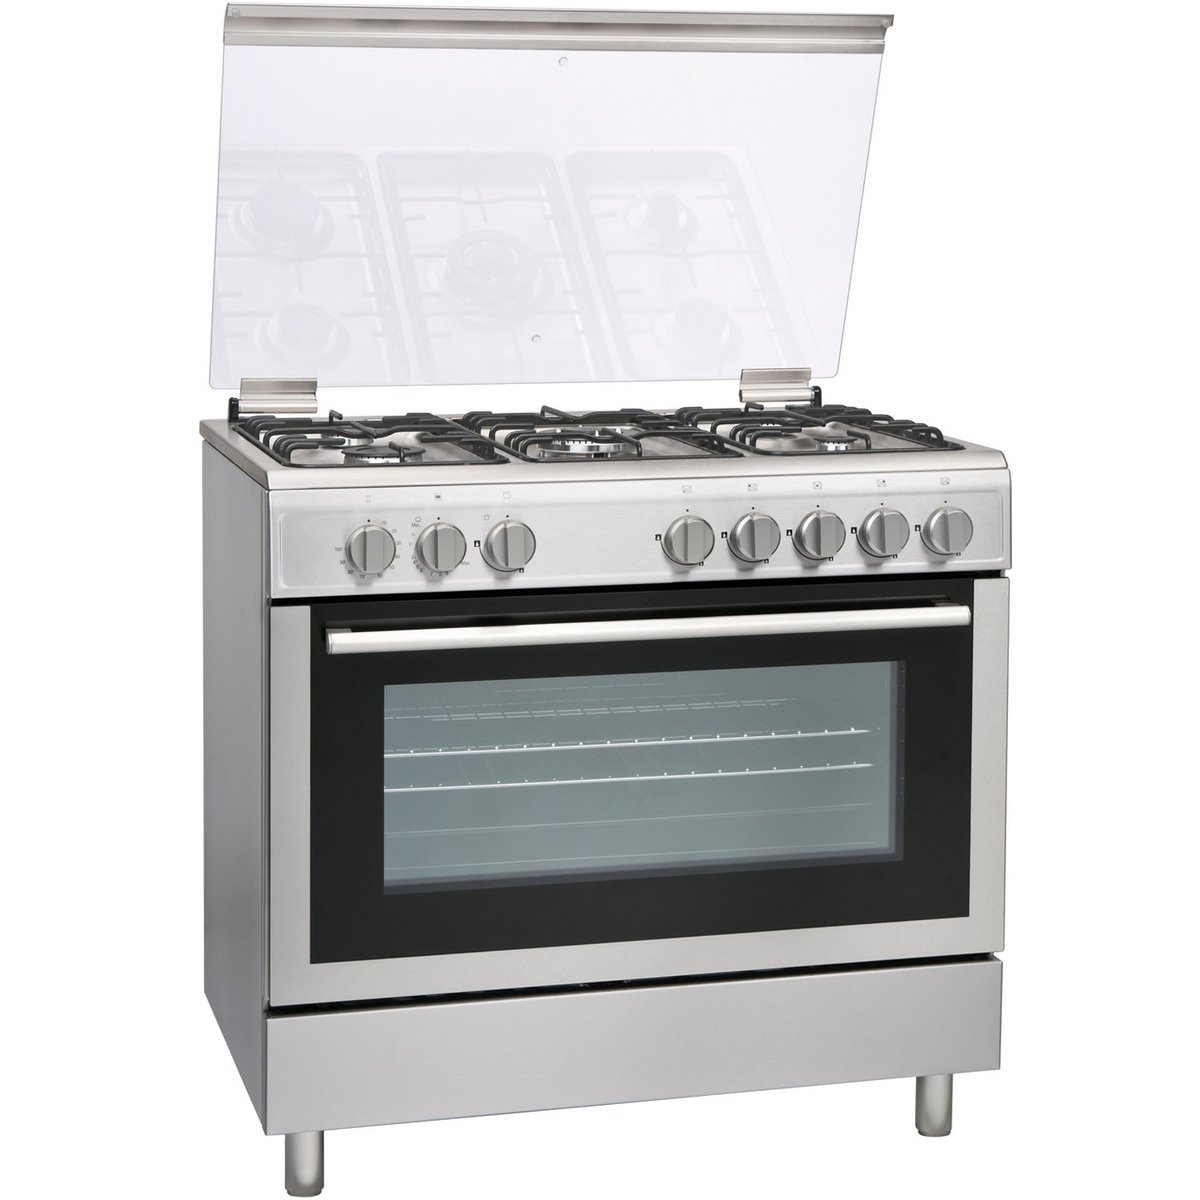 Hoover Cooking Range FGC9060-3D 90x60 5Burner